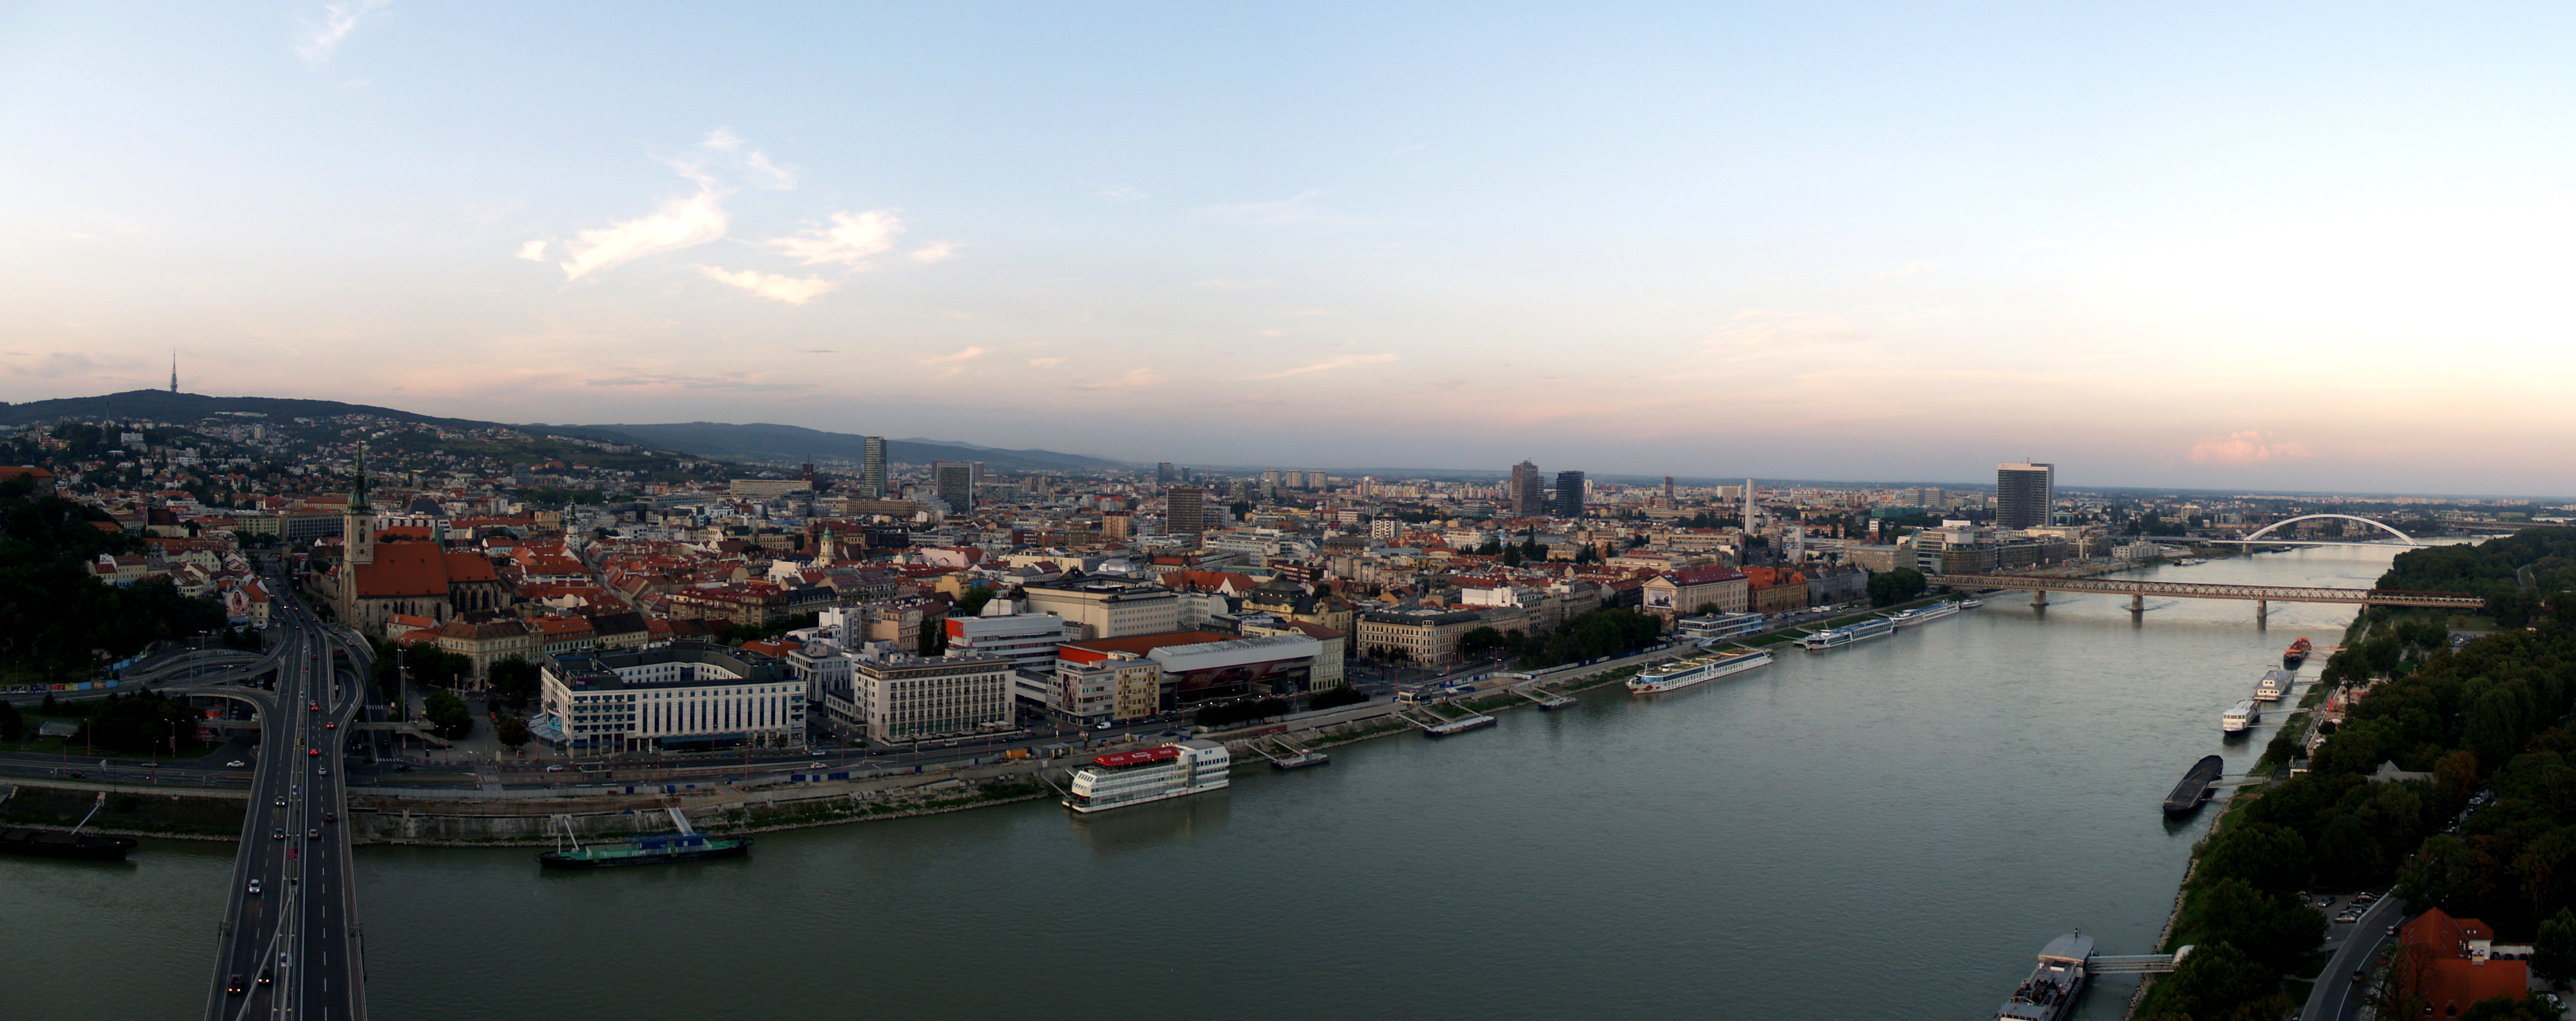 Та й сам по собі це місто дуже маленький - тут живе всього півмільйона людей, тому Братислава ідеально підійде для спокійного, але культурно насиченого відпочинку на пару днів